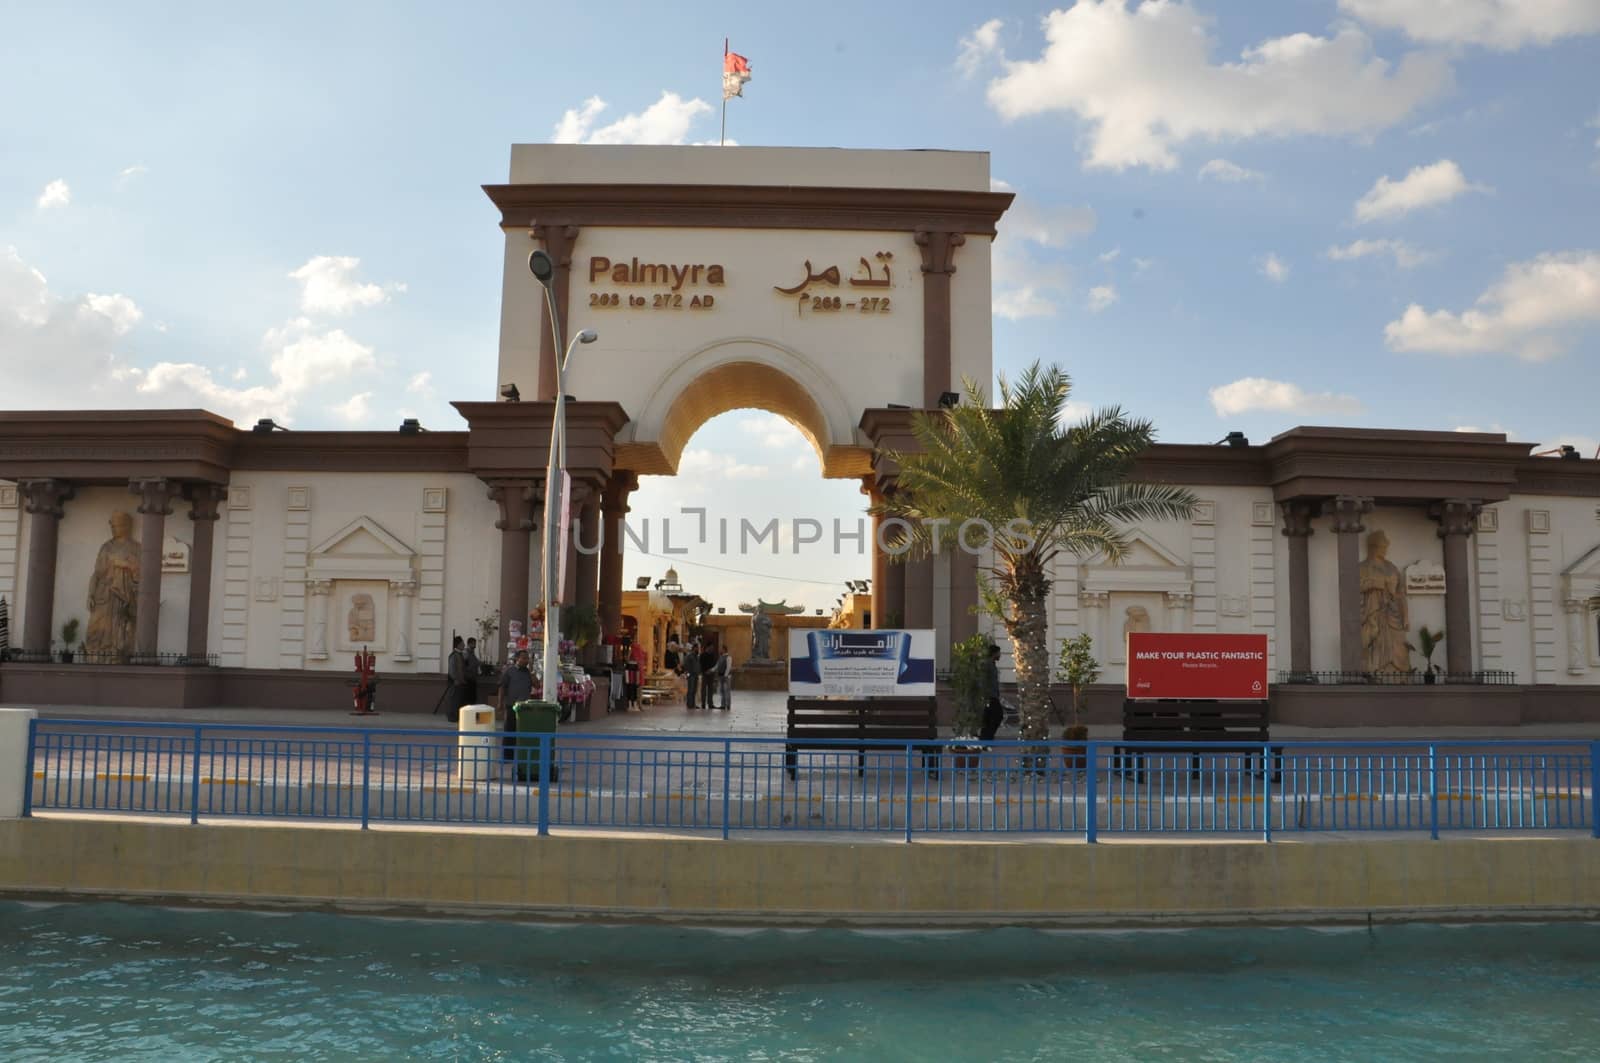 Palmyra pavilion at Global Village in Dubai, UAE by sainaniritu